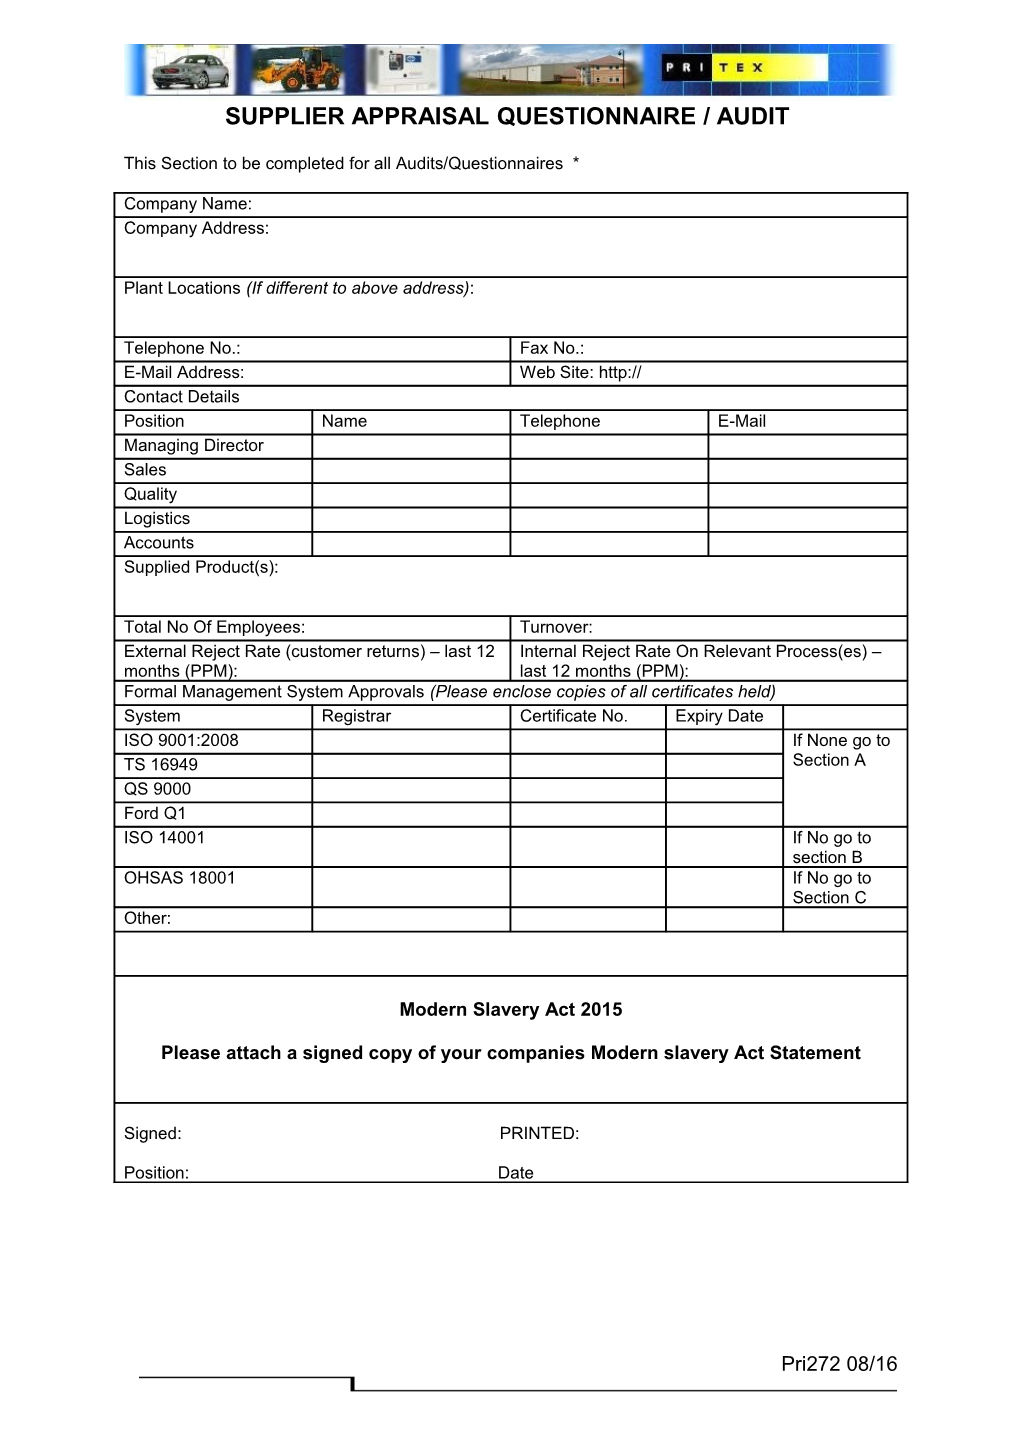 Supplier Appraisal Questionnaire / Audit